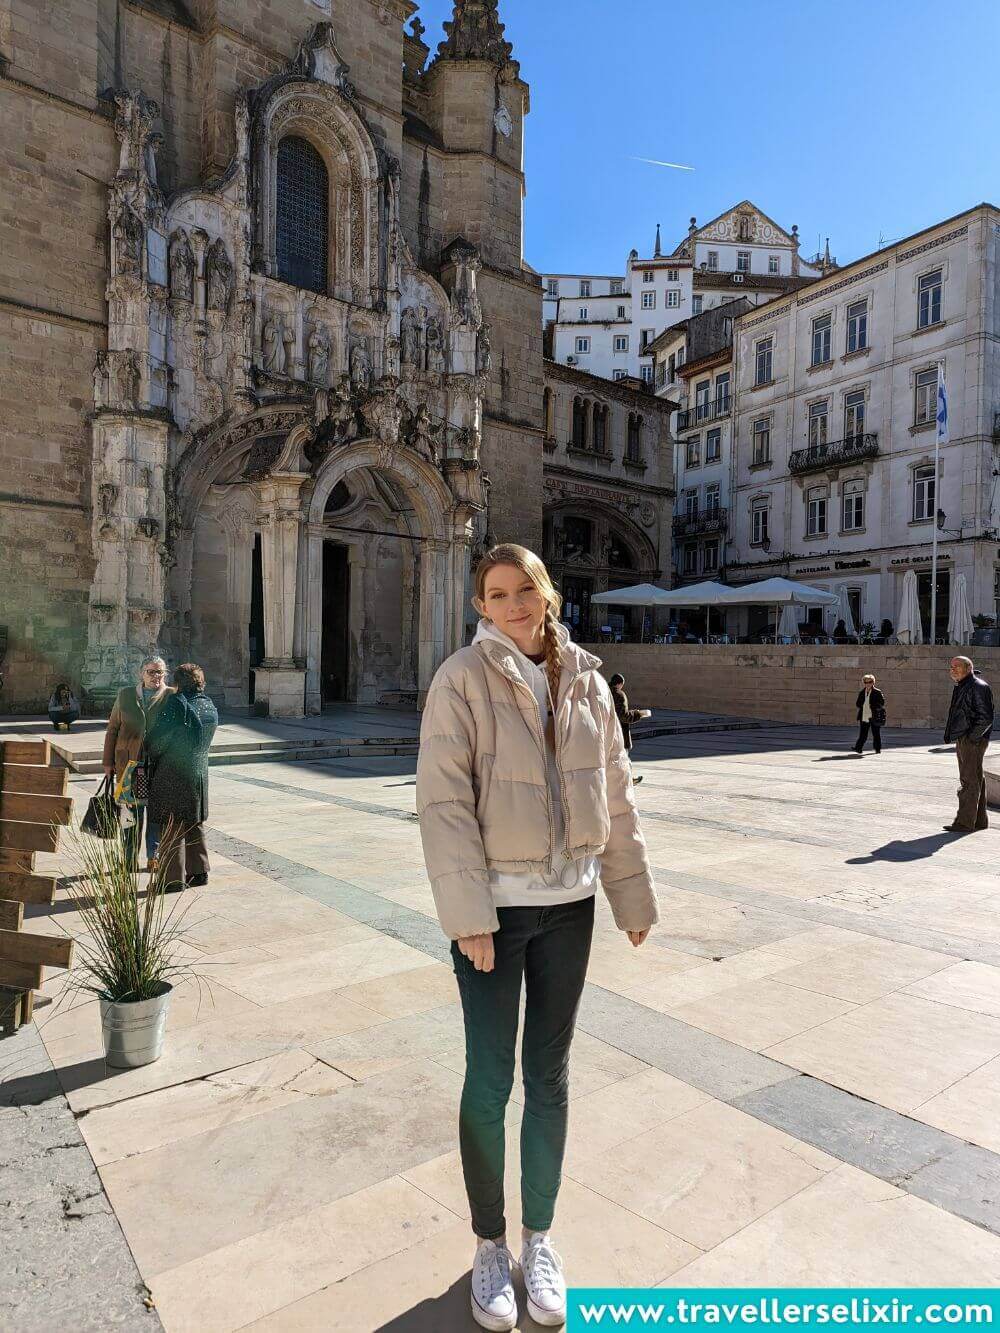 Photo of me in front of Igreja de Santa Cruz in Coimbra.